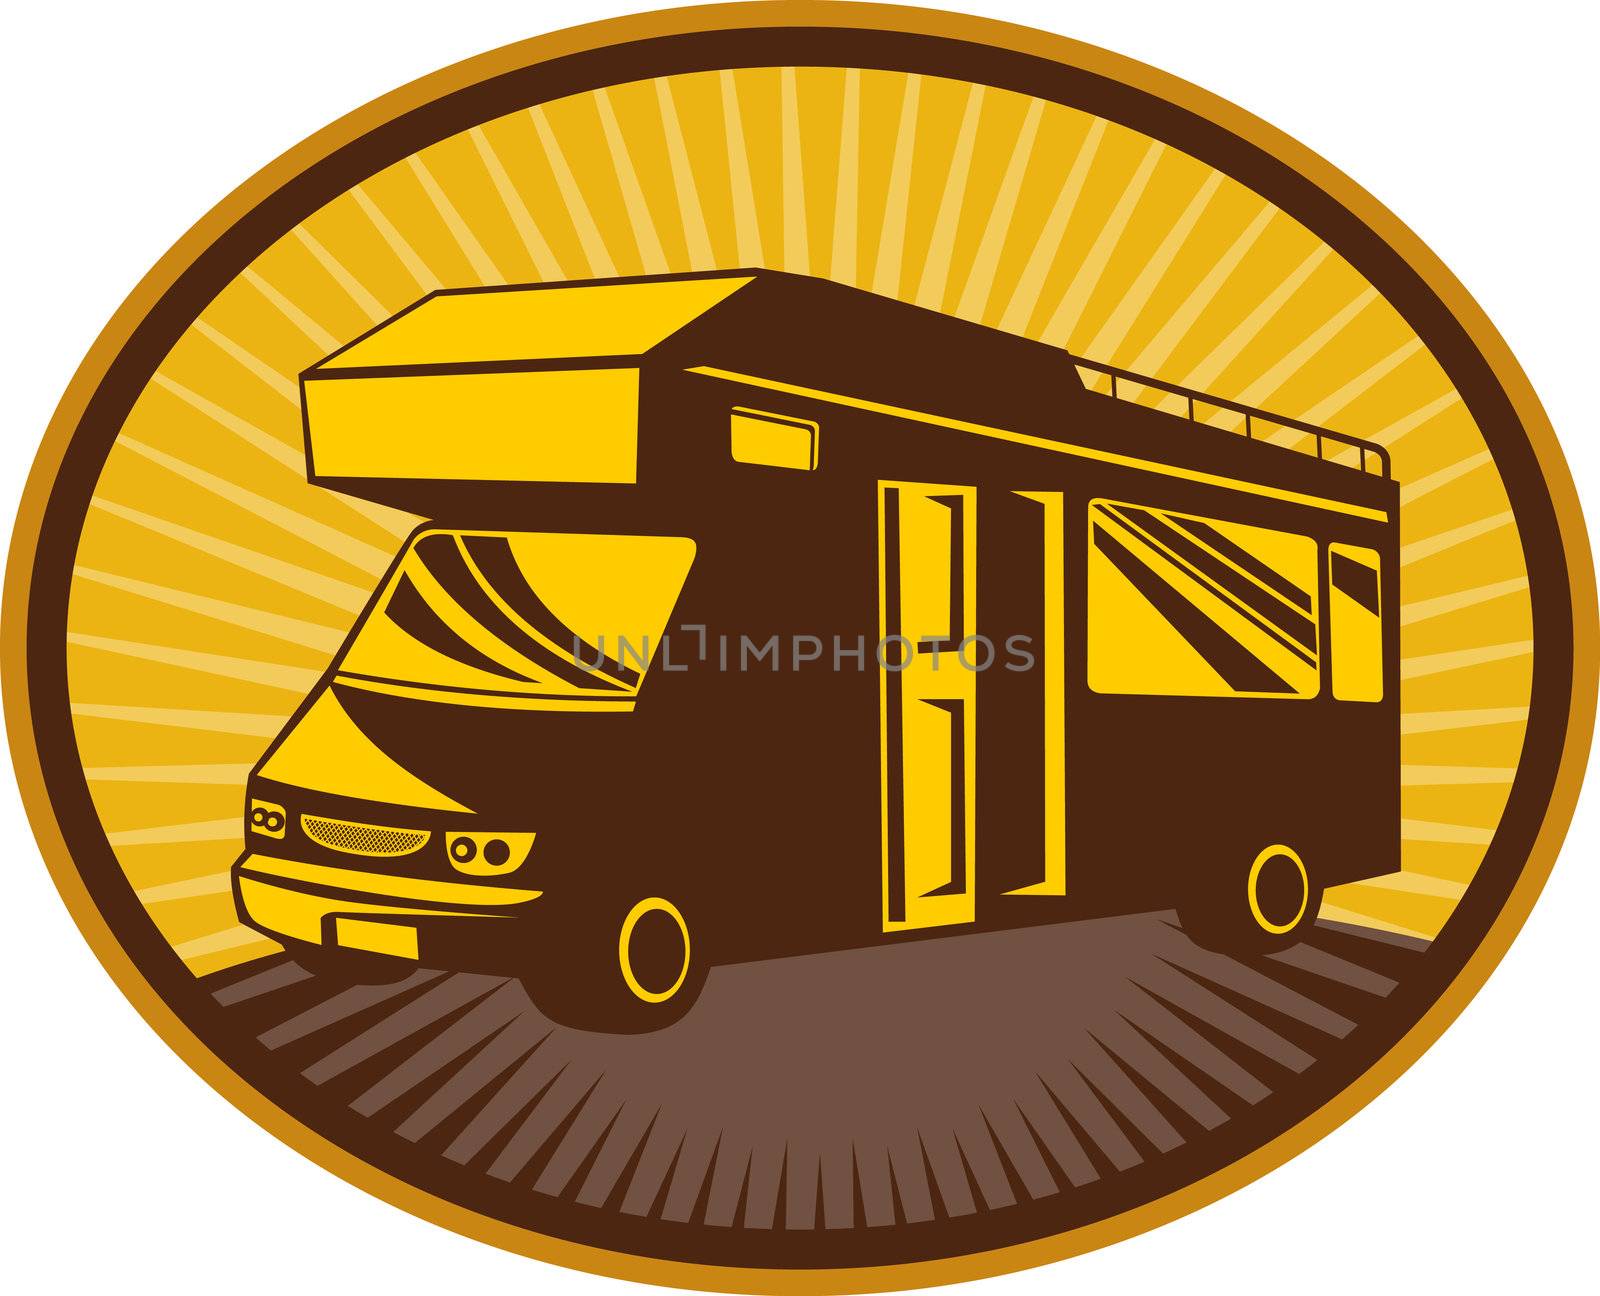 Camper van,caravan or mobile home by patrimonio